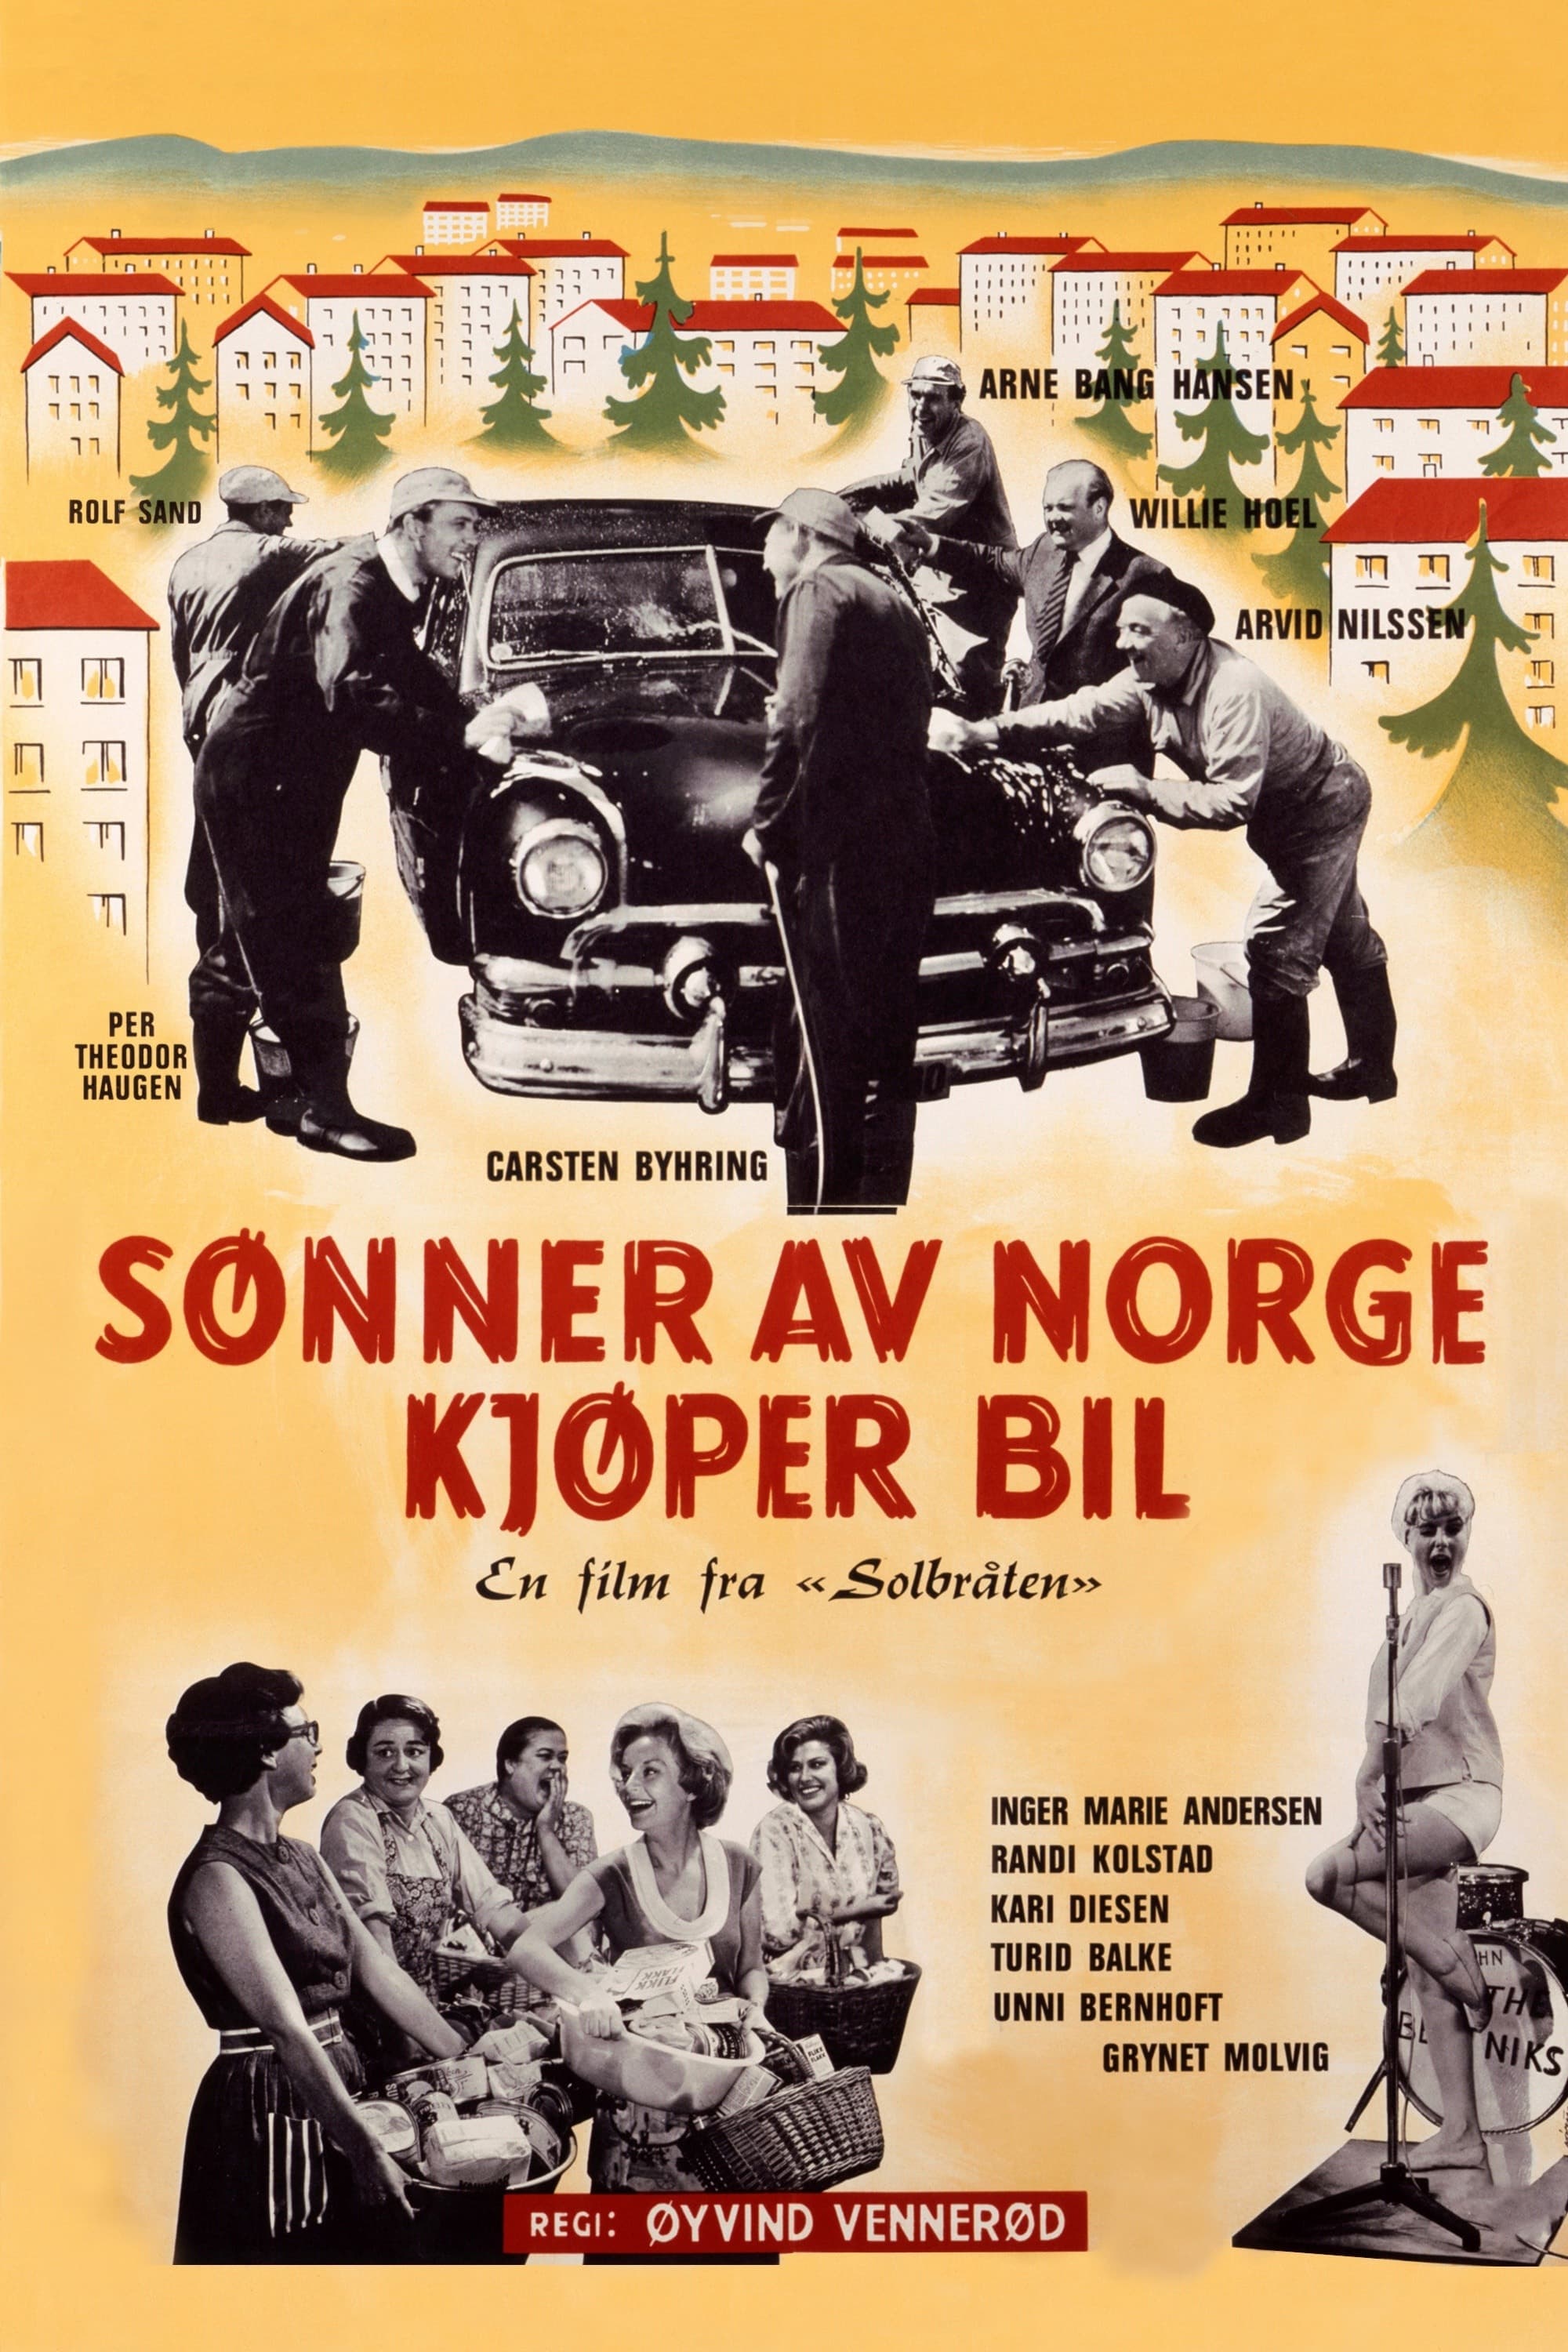 Sønner av Norge kjøper bil (1962)